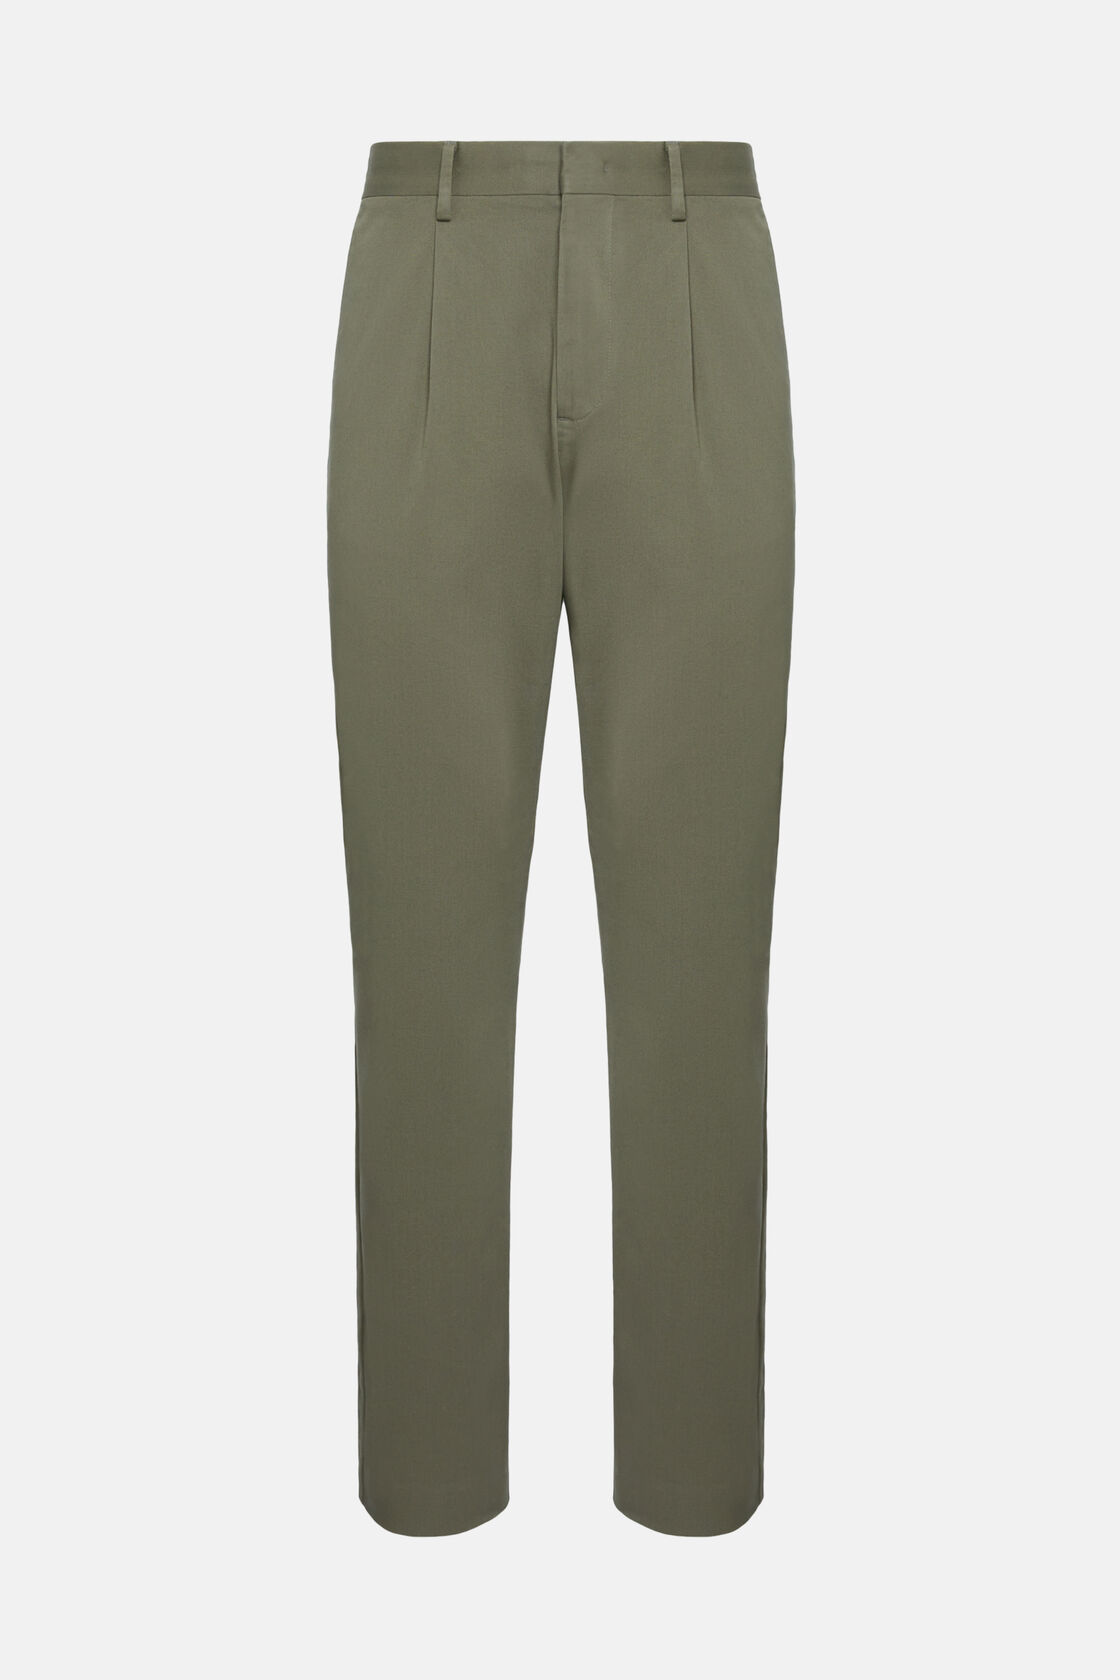 Spodnie z elastycznej bawełny, Military Green, hi-res